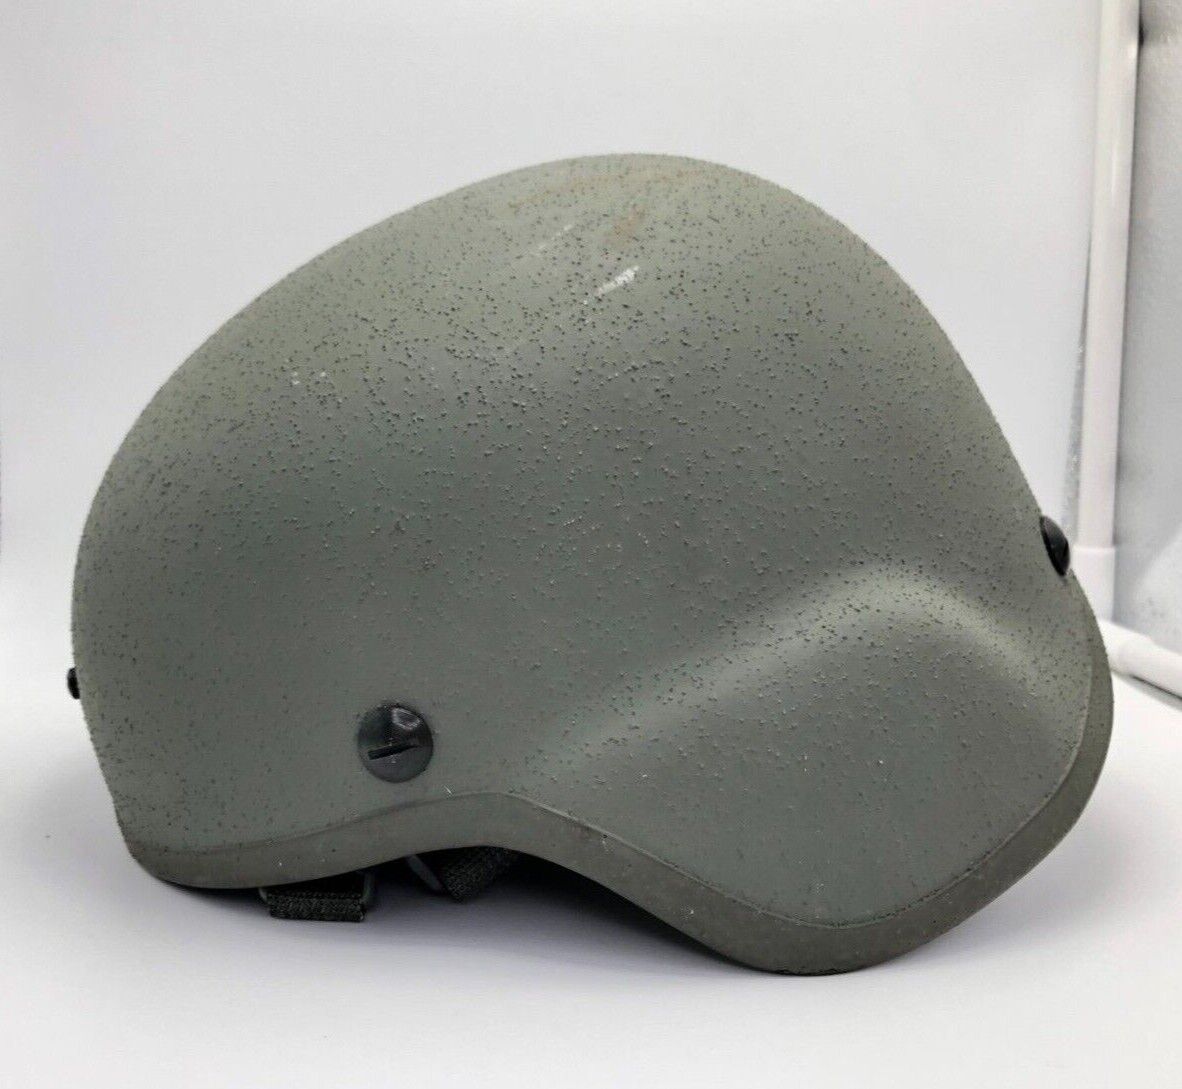 GENTEX Advanced Combat Helmet Size Small, DOM: 08/13, LOT NO. 316 -  ARMY